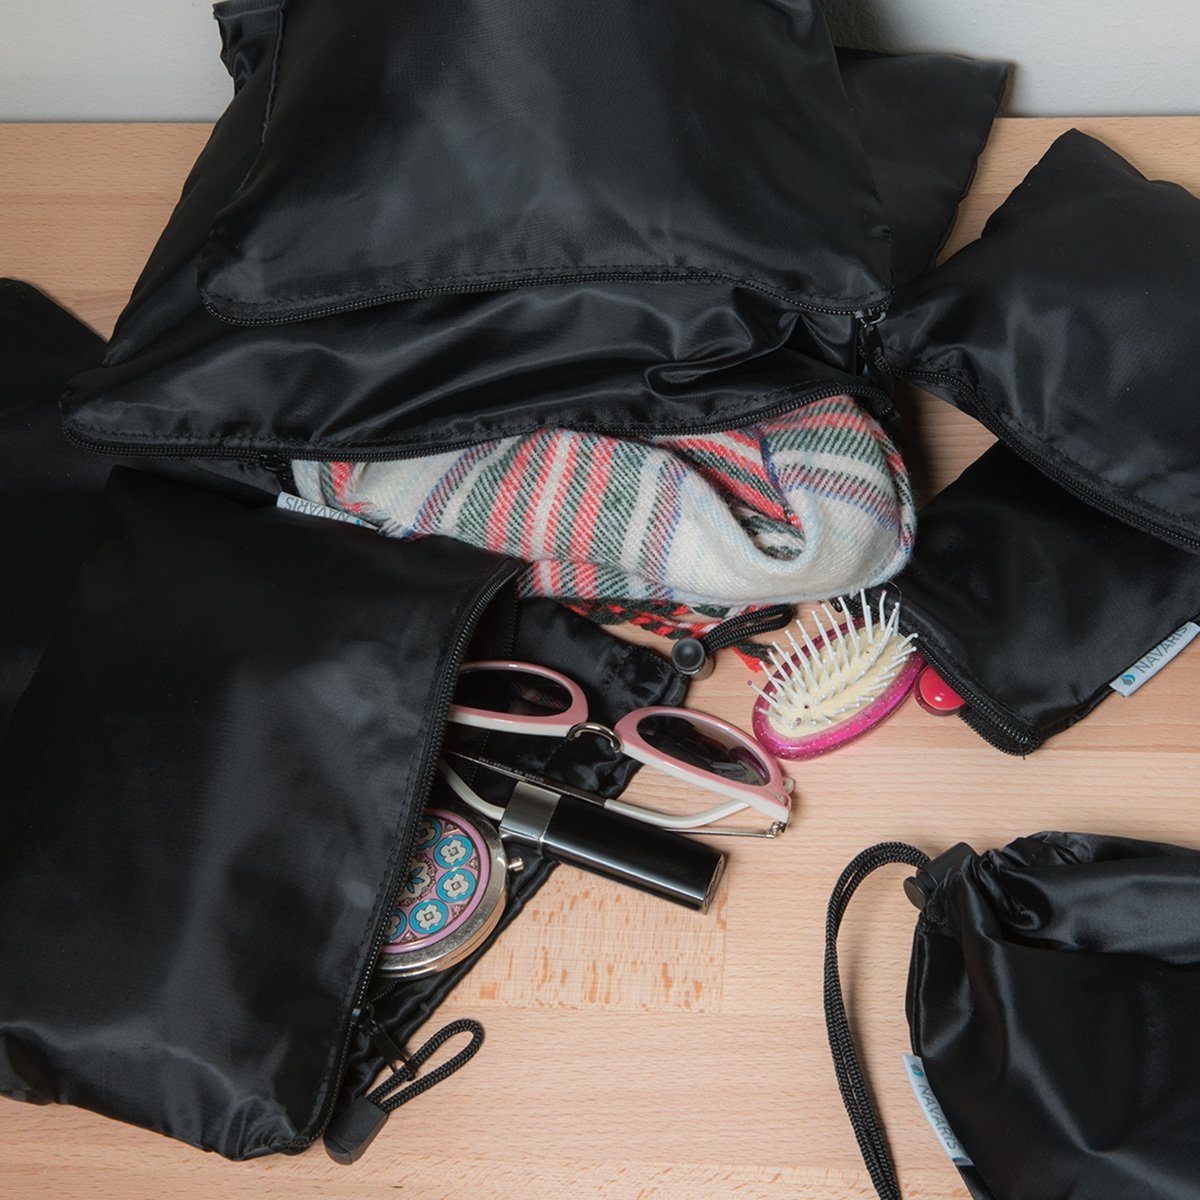 Reisebeutel als Schuhbeutel Rucksack und Reisetasche Wäschebeutel für Reisen Camping Wandern Strand Sport Organizer Beutel für Koffer Sharplace Packtaschen Packbeutel 